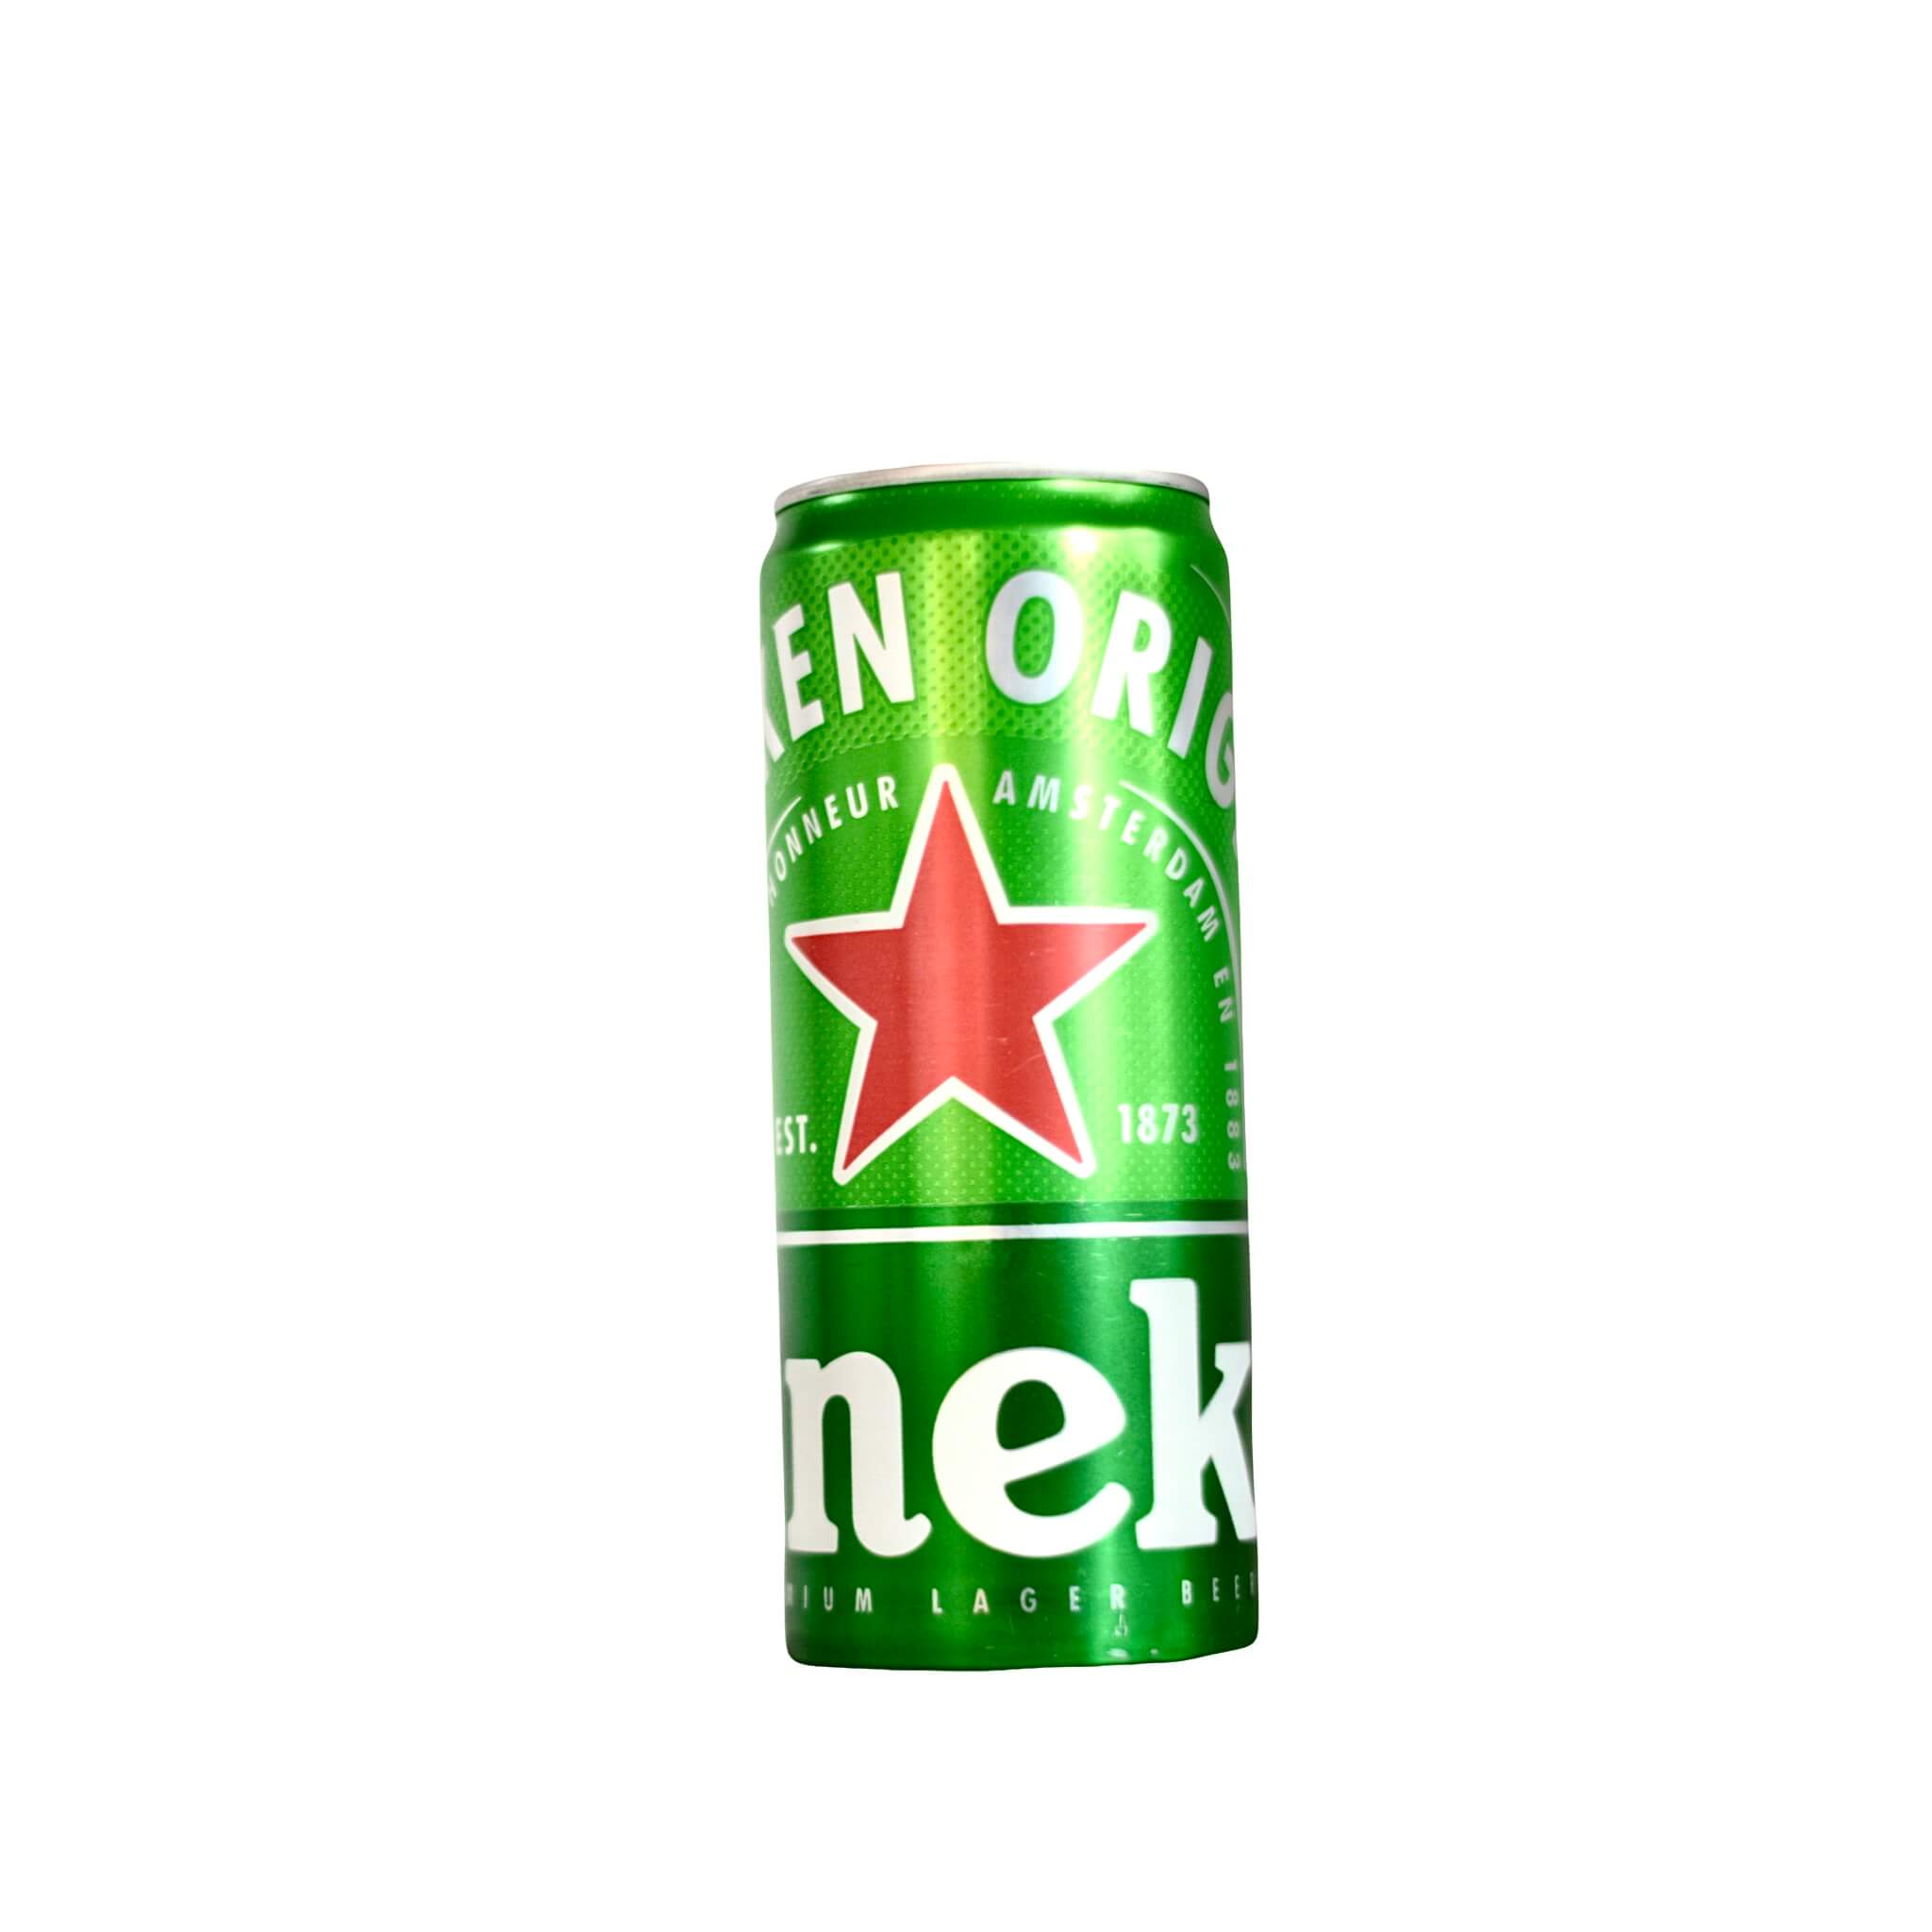 A Can of Heineken Beer